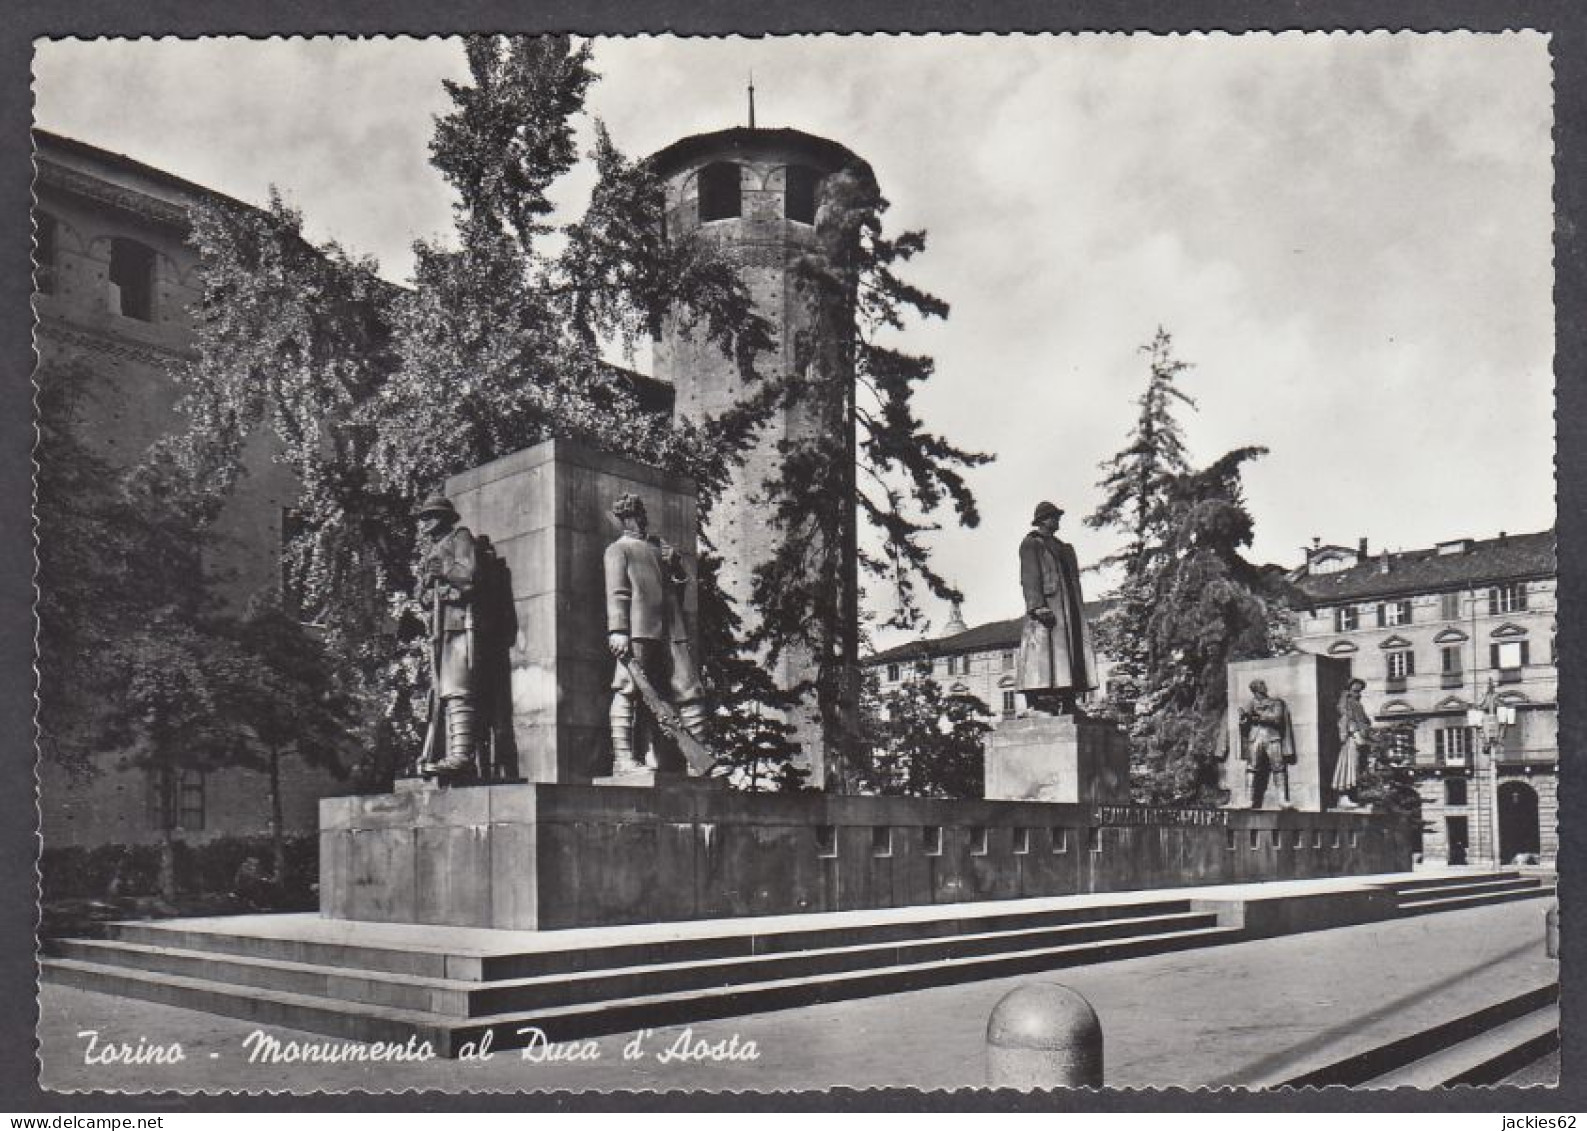 126682/ TORINO, Monumento Al Duca D'Aosta - Andere Monumente & Gebäude